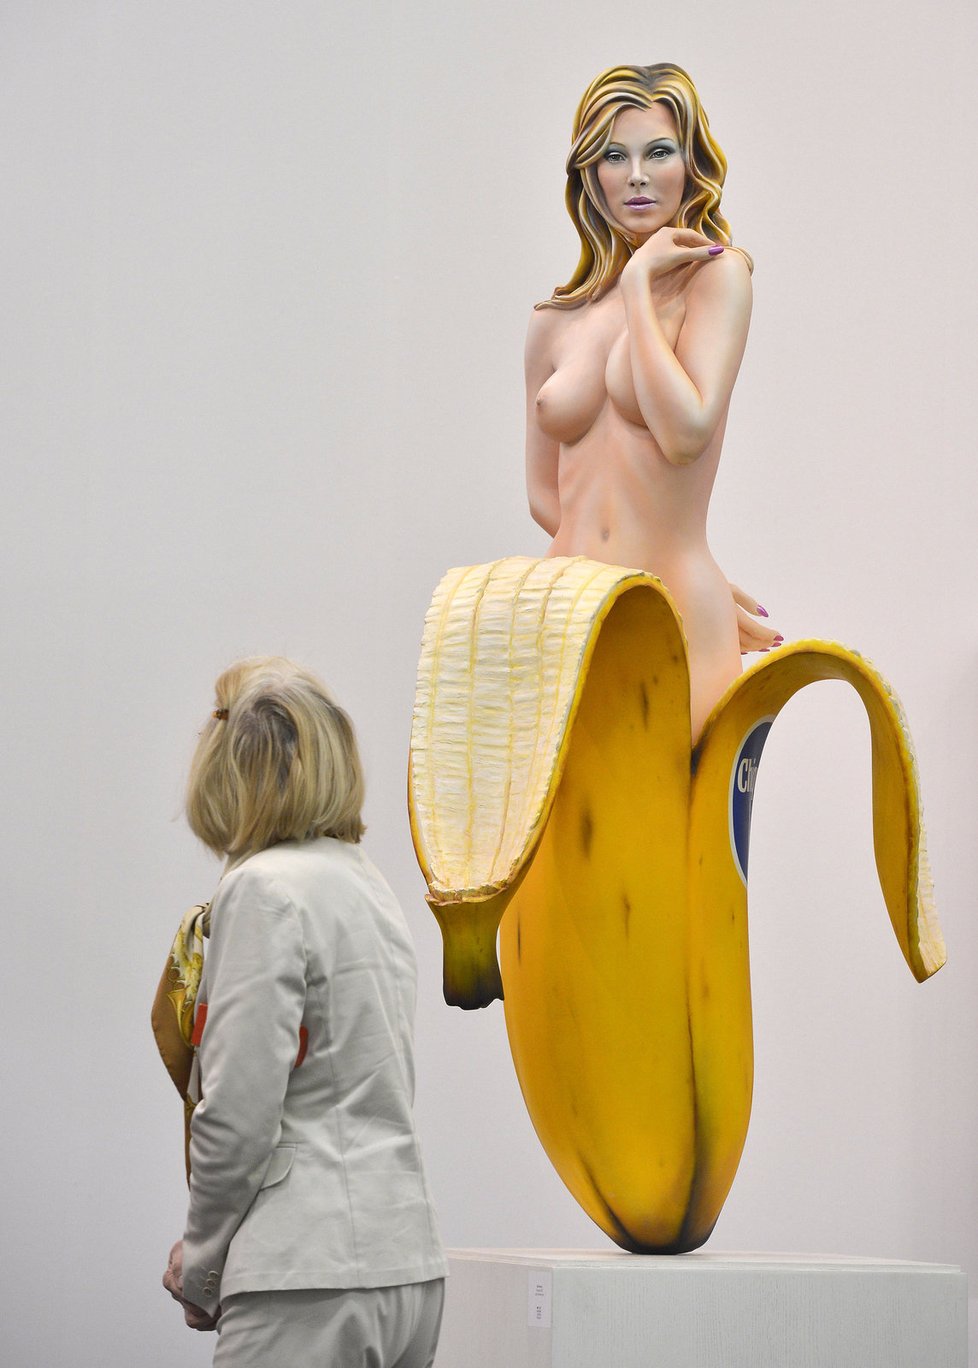 Socha amerického umělce Mela Ramose Chiquita na výstavě v Kolíně nad Rýnem